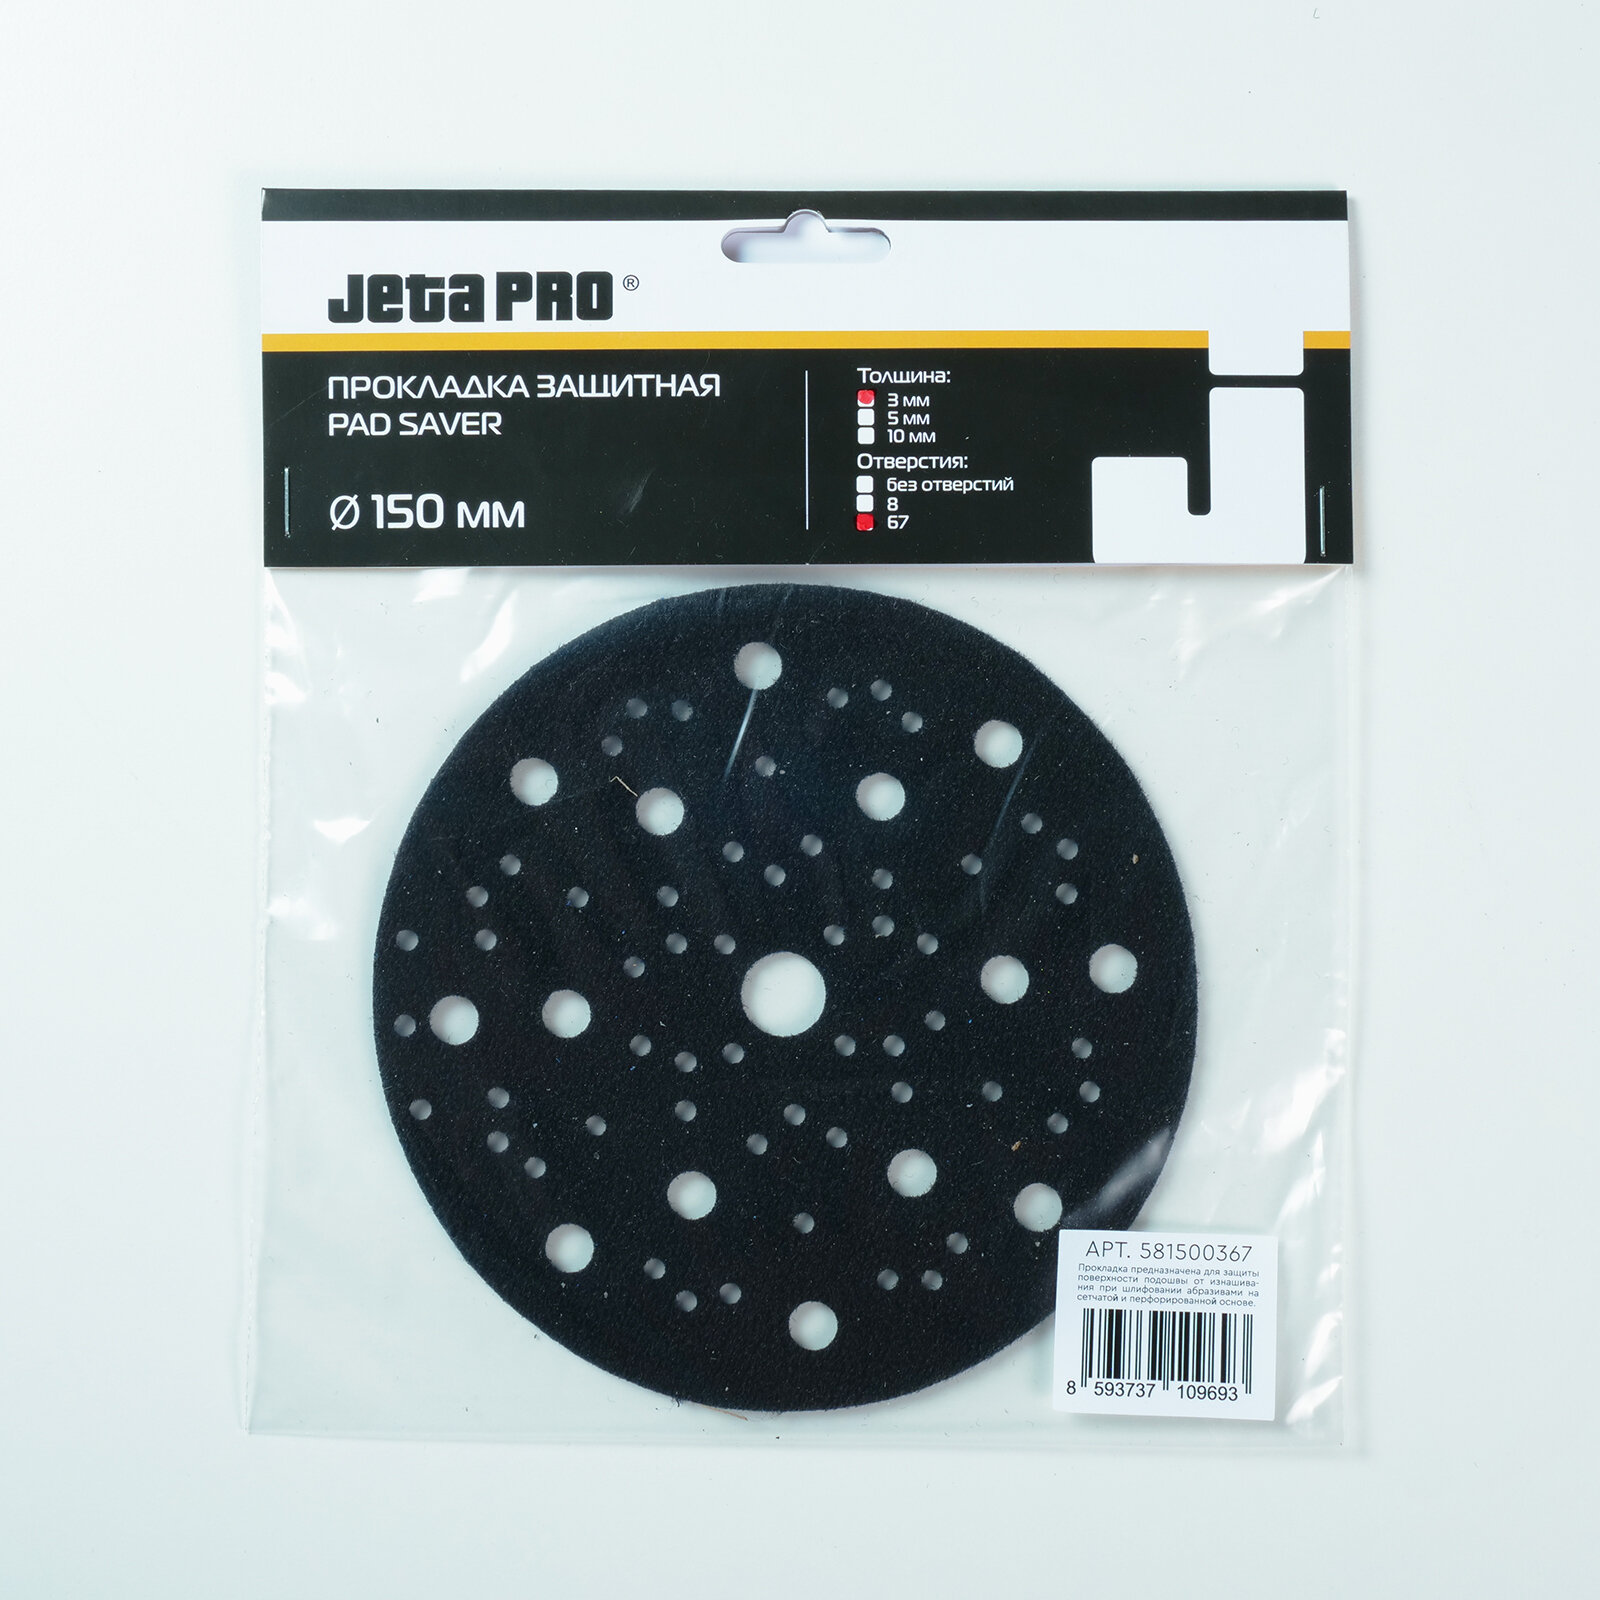 JETA PRO Прокладка защитная 150мм 67 отверстий (для машинки 150мм)